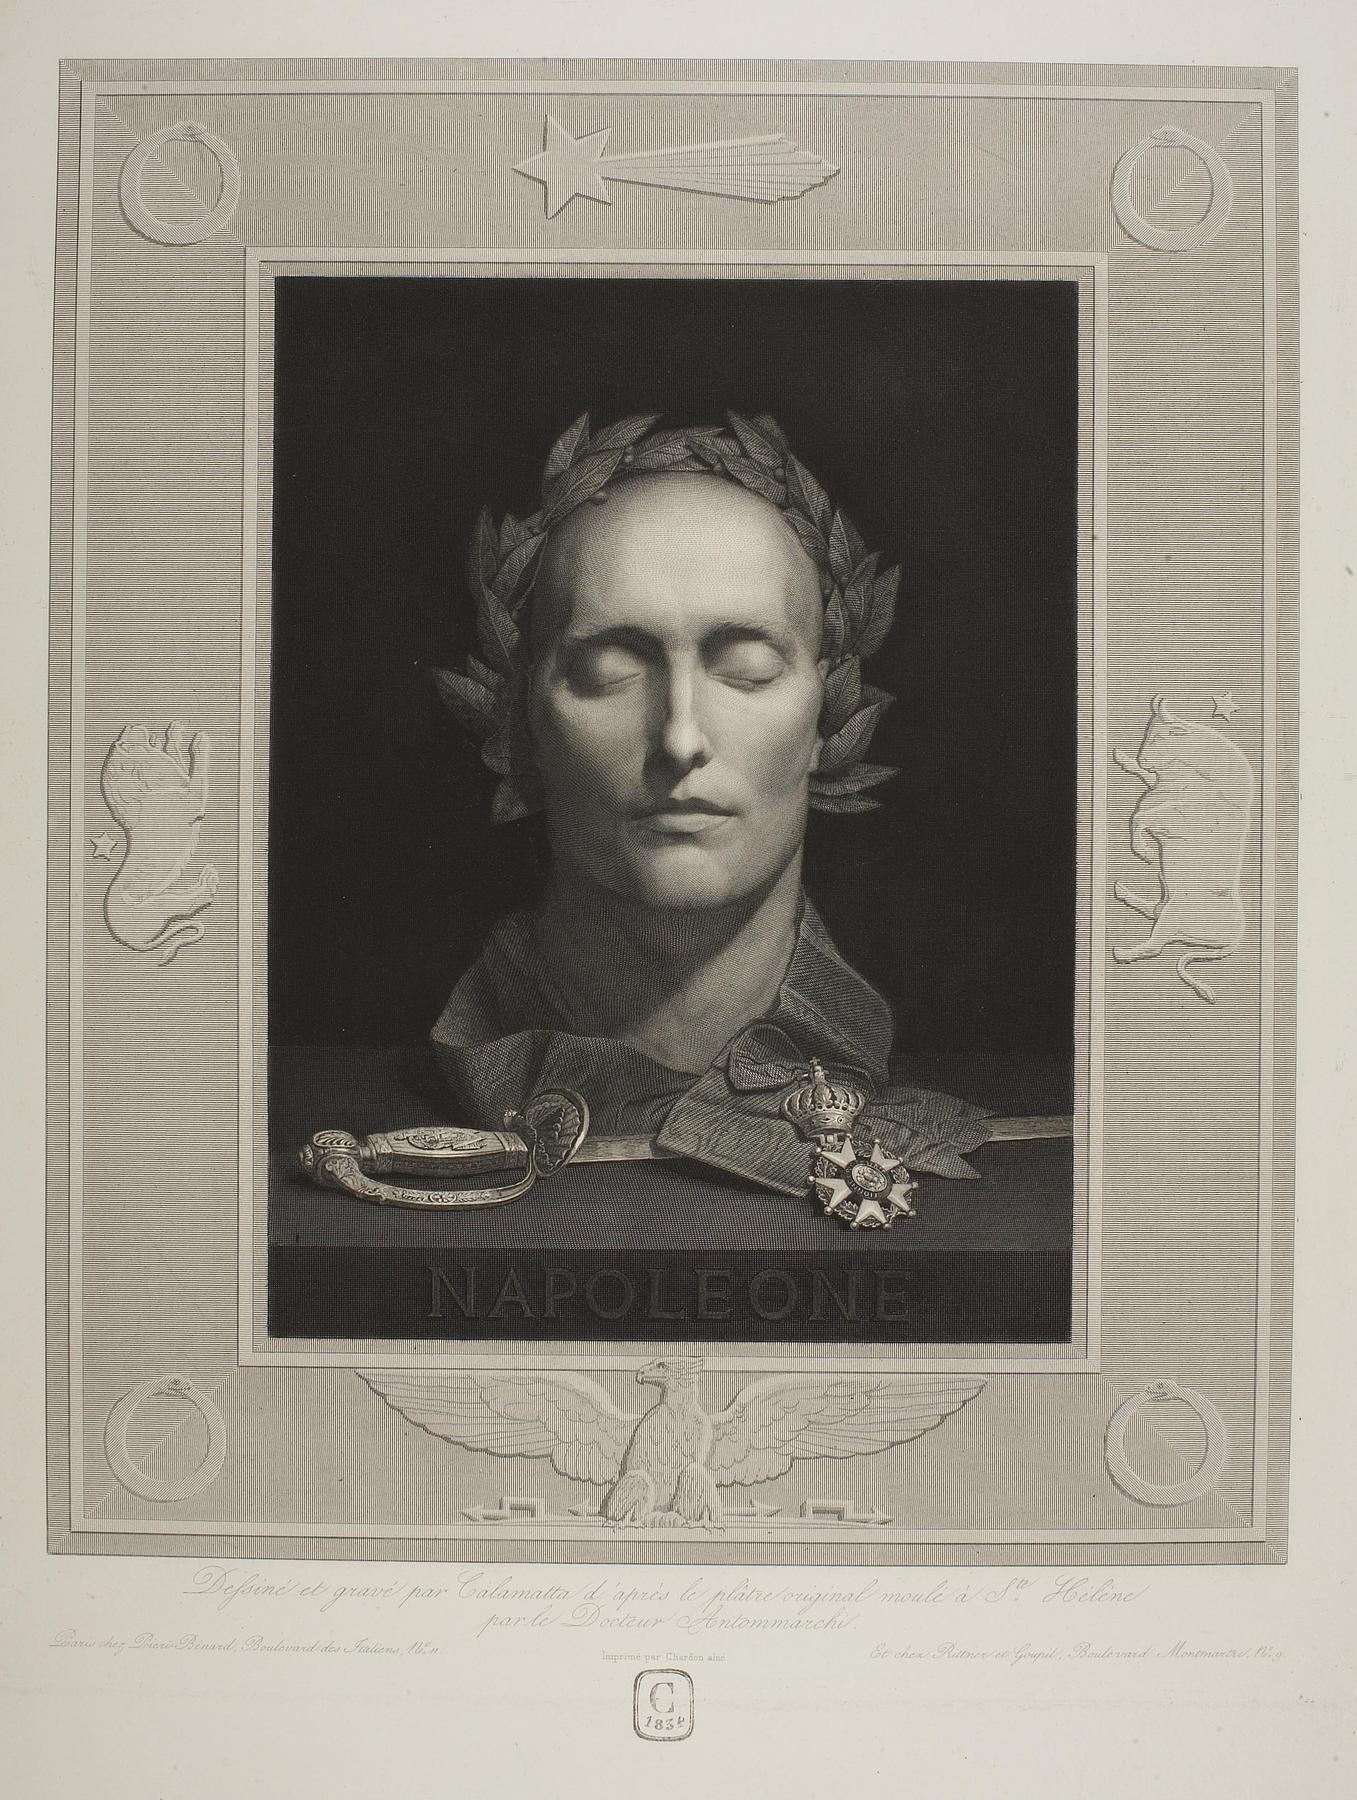 Napoleon Bonapartes dødsmaske med laurbærkrans, æreslegionens orden og kårde, E401